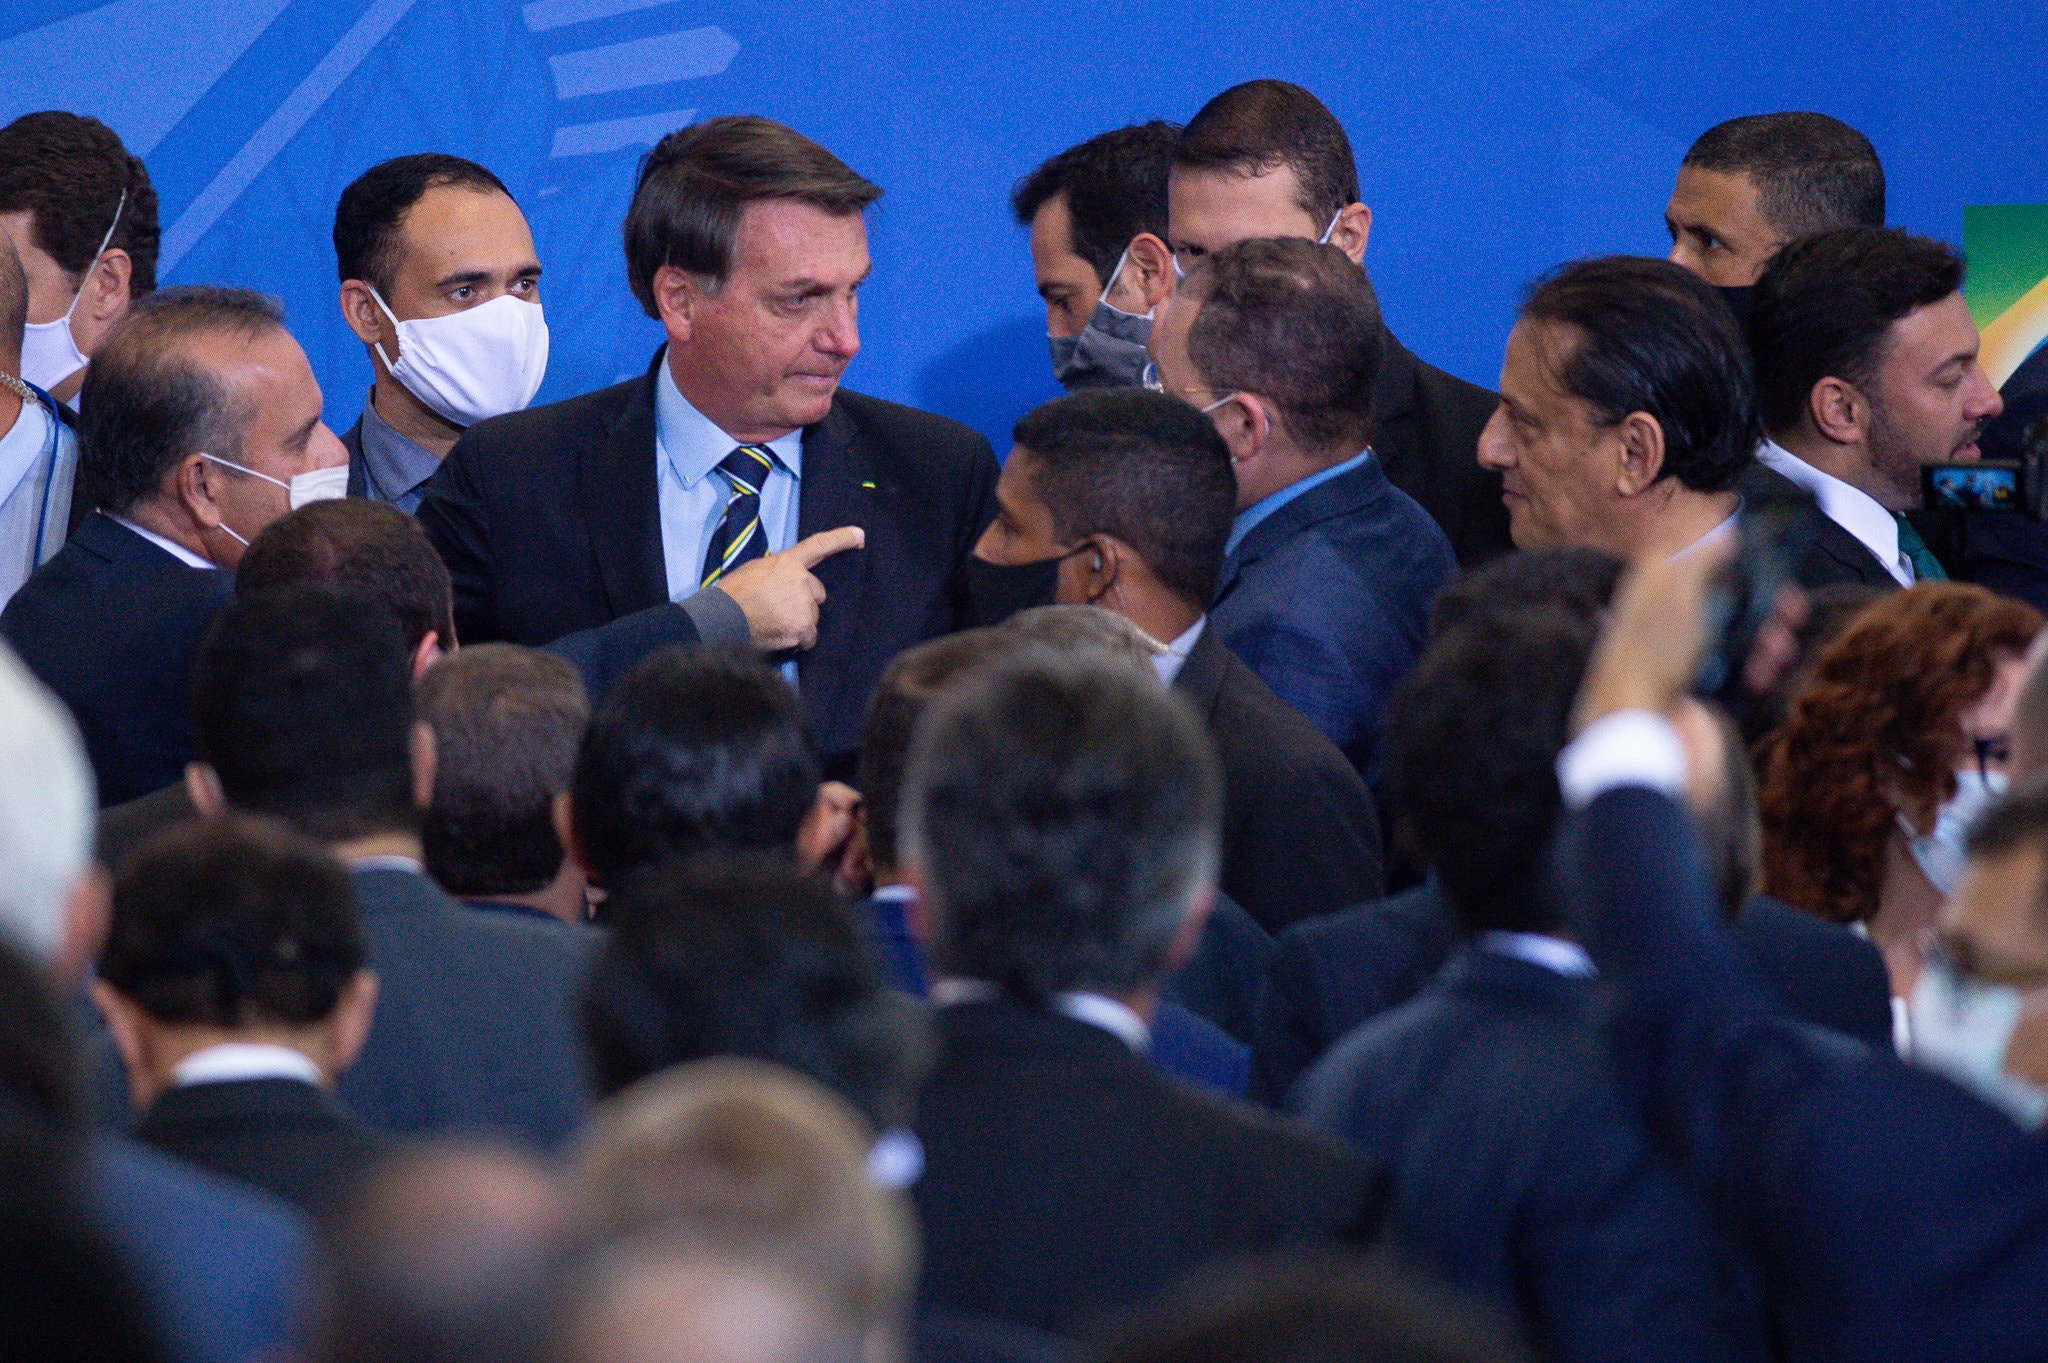 Bolsonaro, President of Brazil Tests Positive For Coronavirus